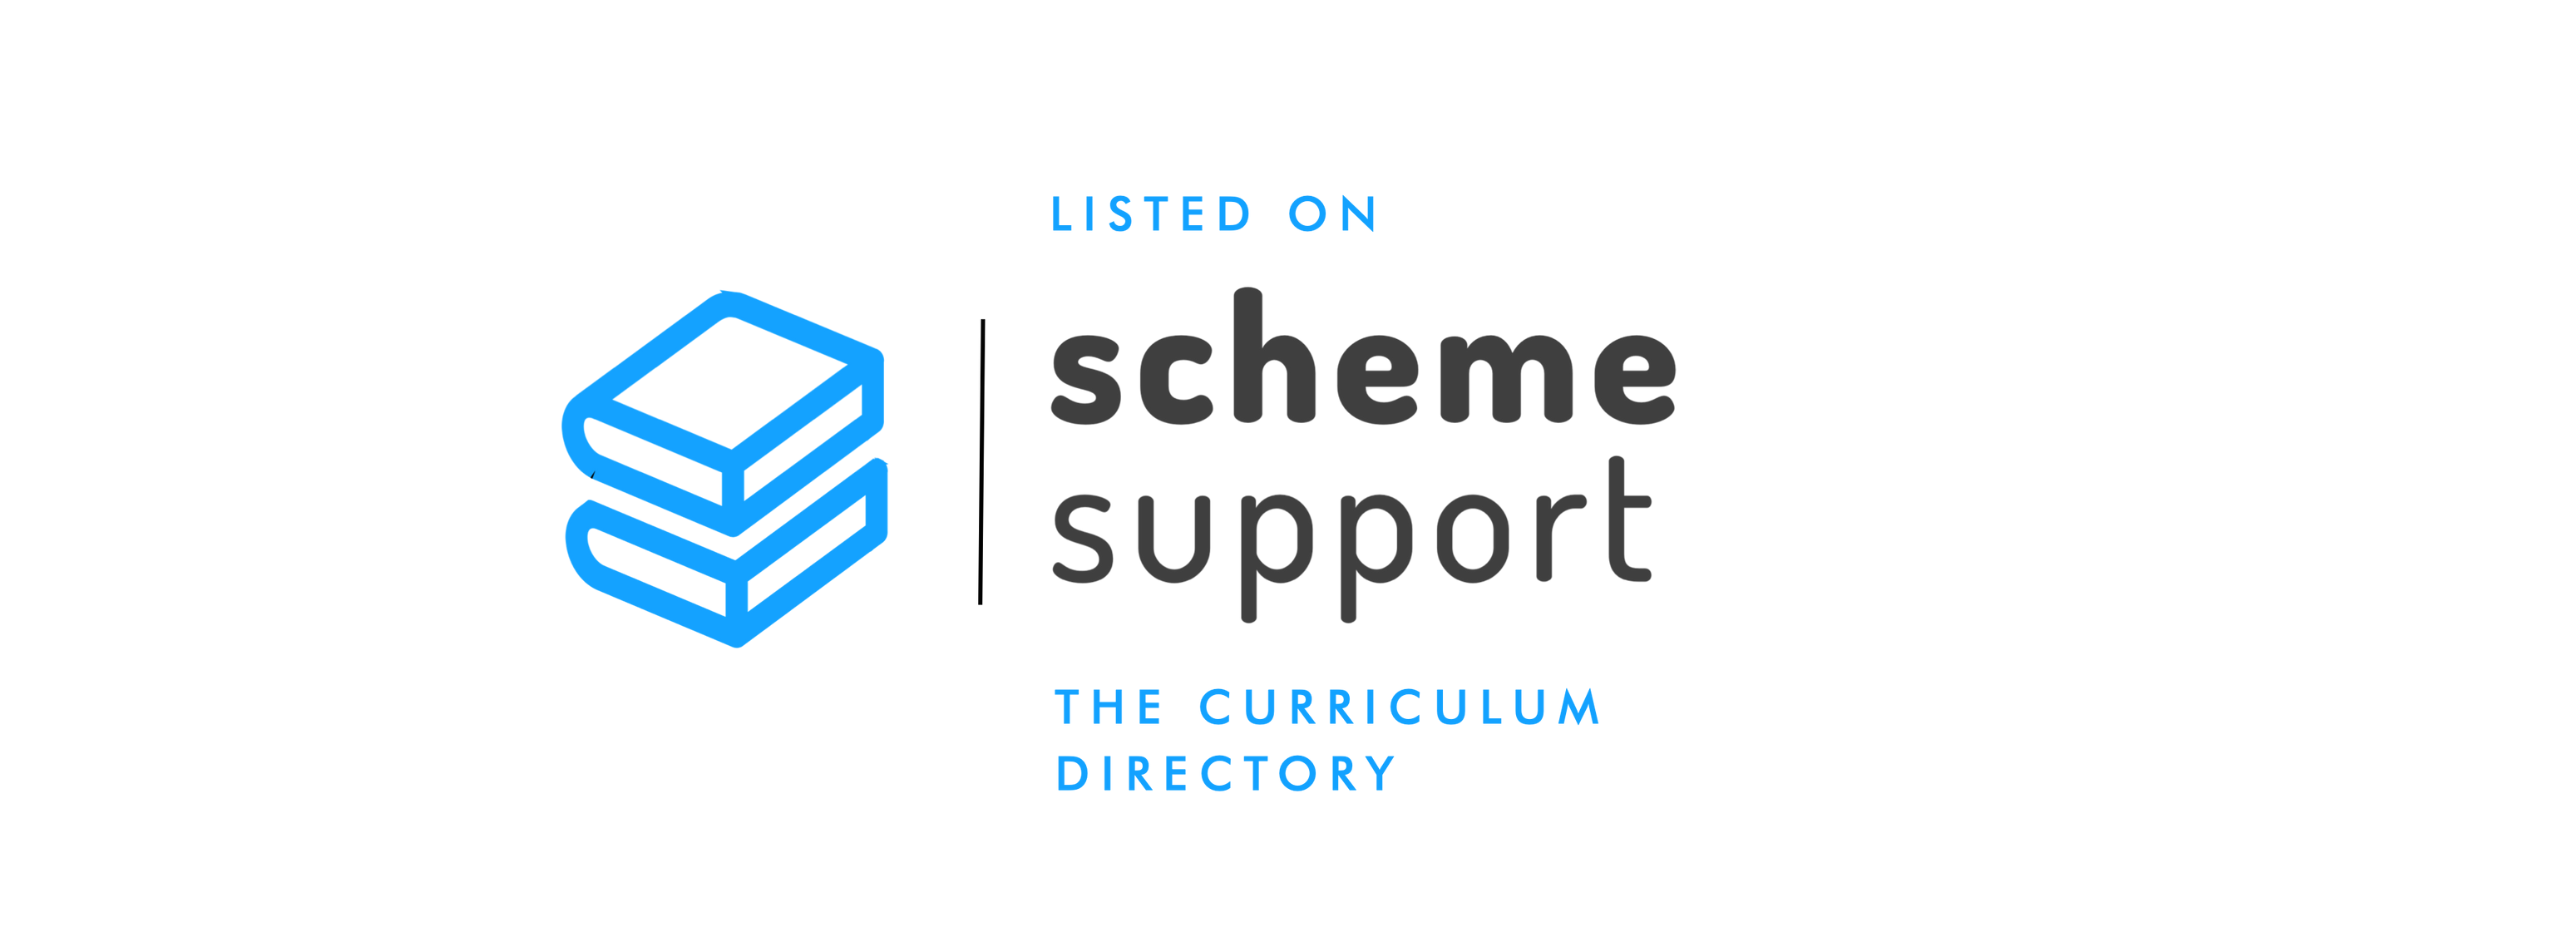 scheme support